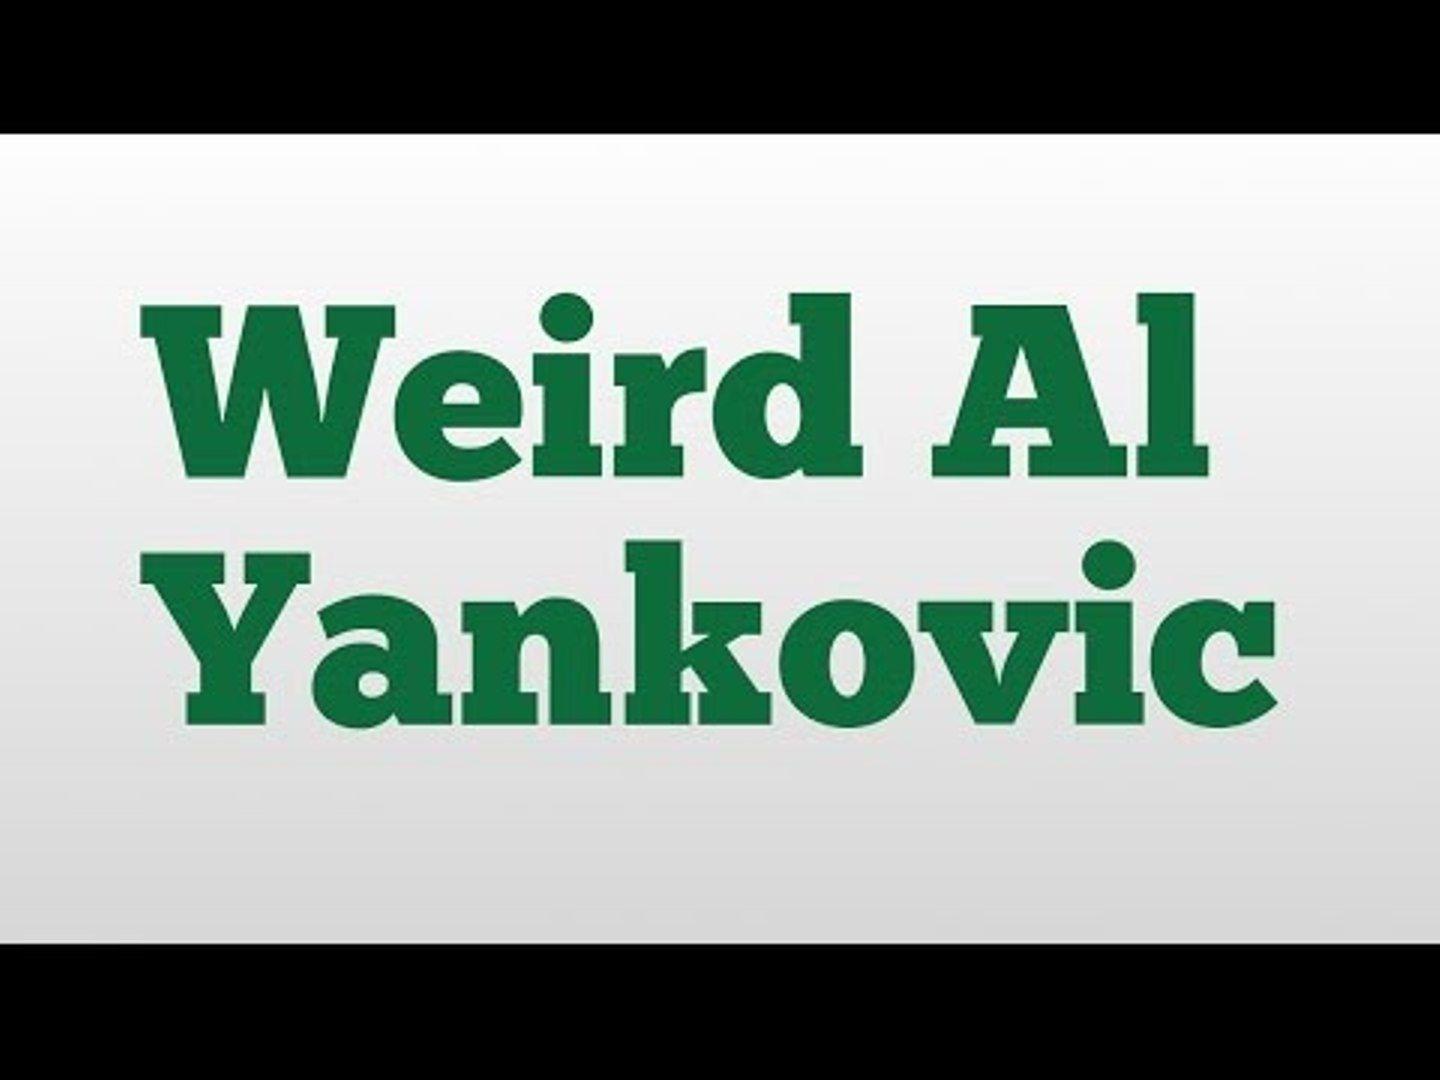 Weird Al Logo - Weird Al Yankovic meaning and pronunciation